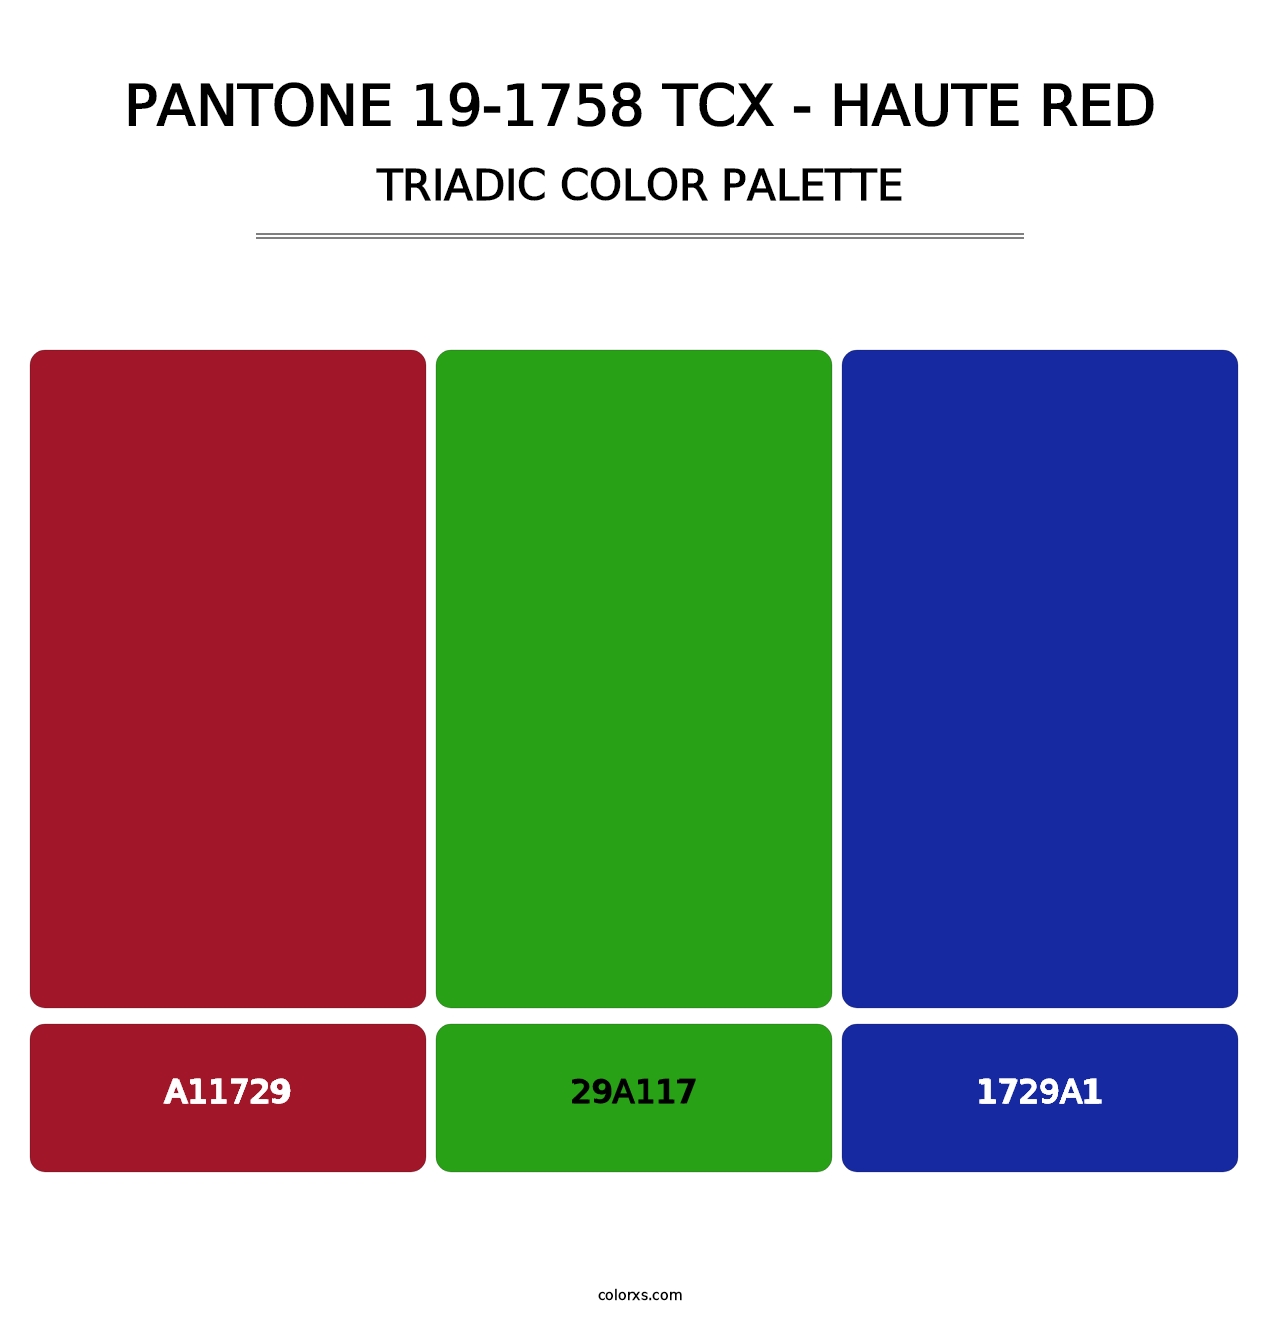 PANTONE 19-1758 TCX - Haute Red - Triadic Color Palette